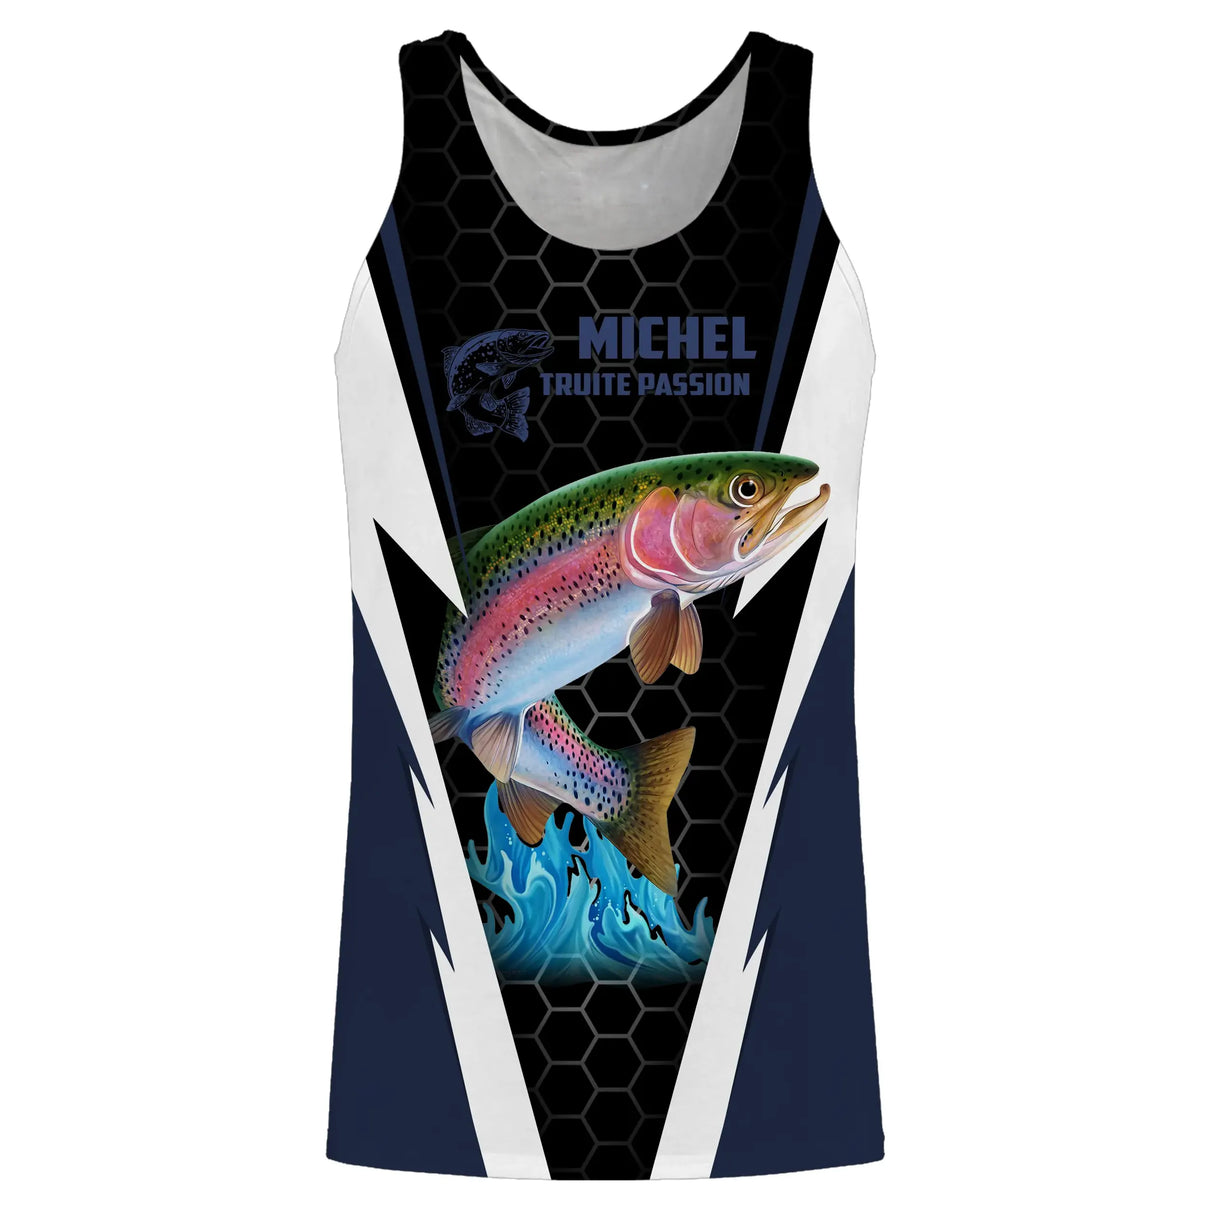 T-shirt da pesca alla trota, regalo personalizzato per pescatori, passione per la trota - CT08072221